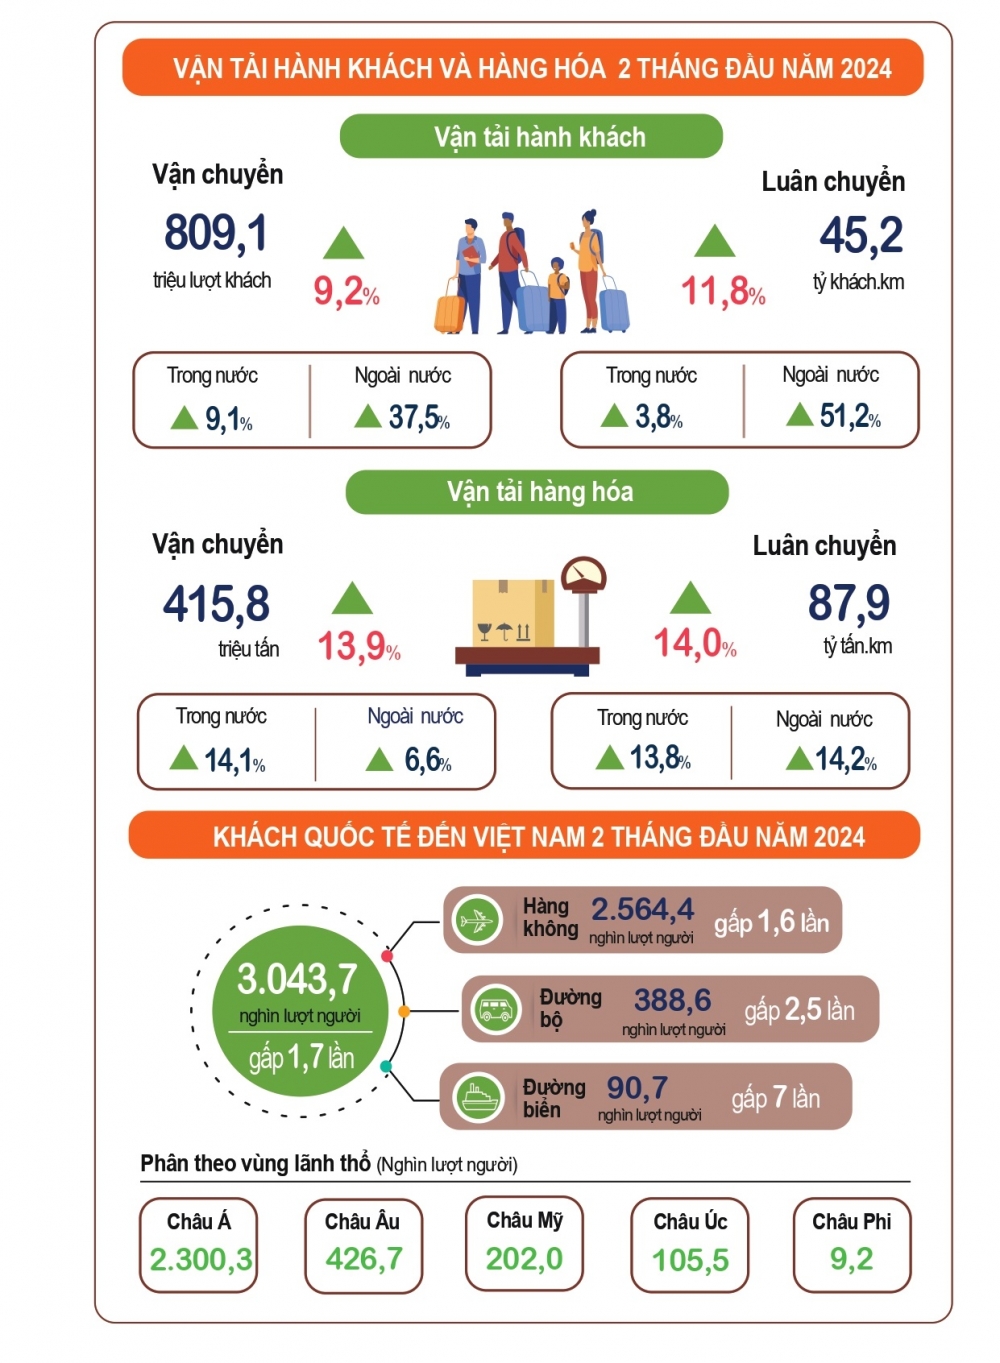 Kinh tế - xã hội Việt Nam 2 tháng đầu năm 2024: Chững lại trong tháng Tết